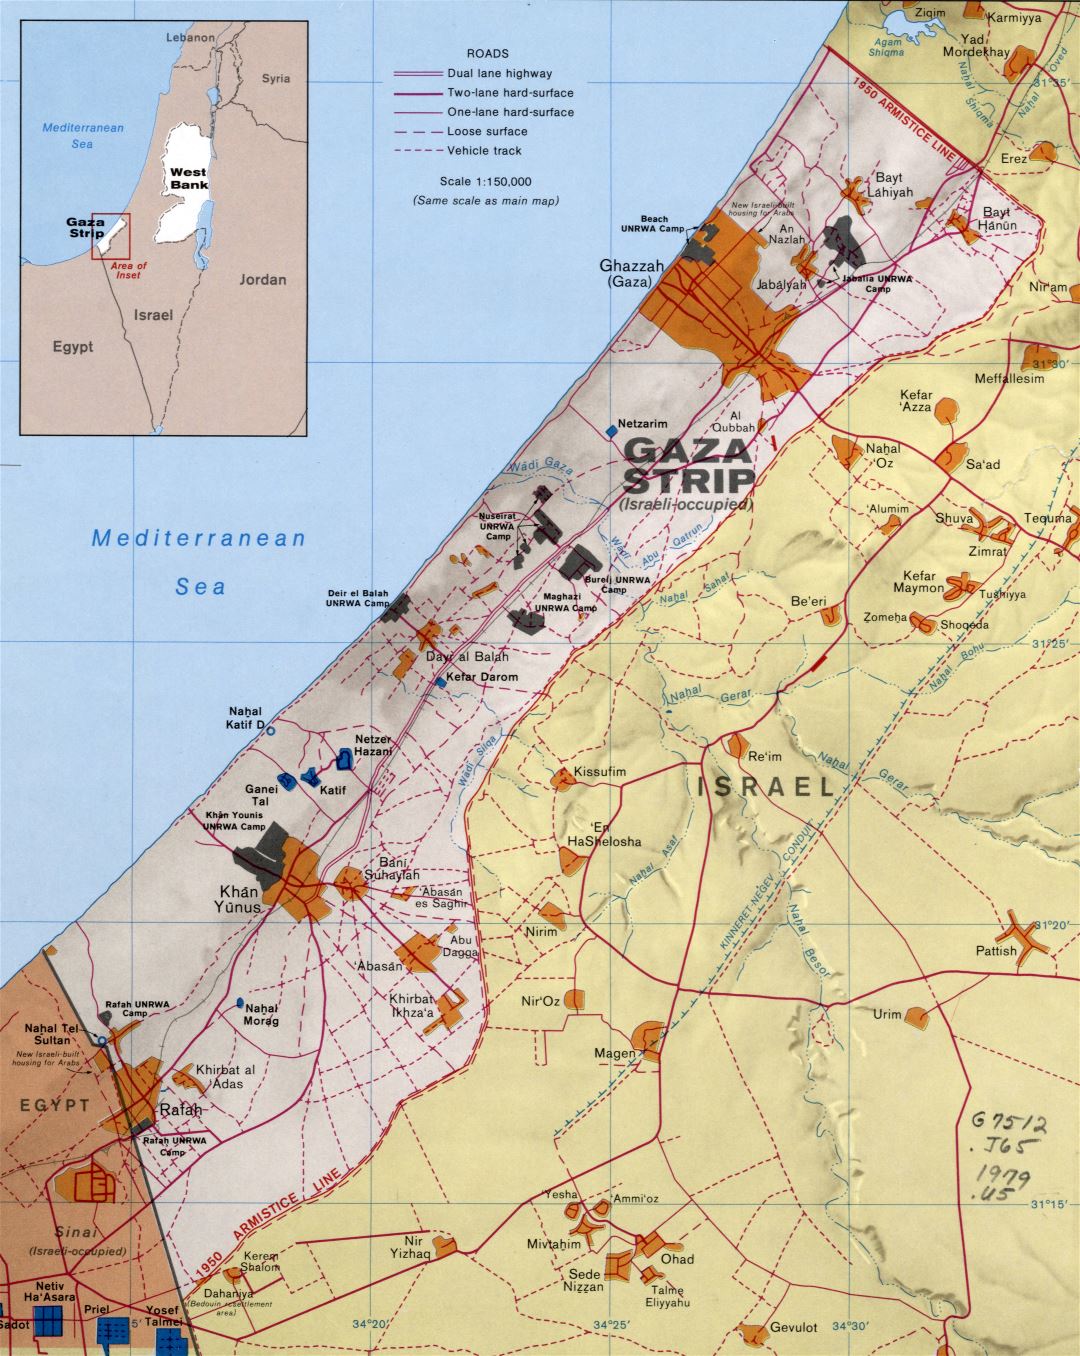 Grande detallado mapa político de la Franja de Gaza con socorro, carreteras, asentamientos y otras marcas